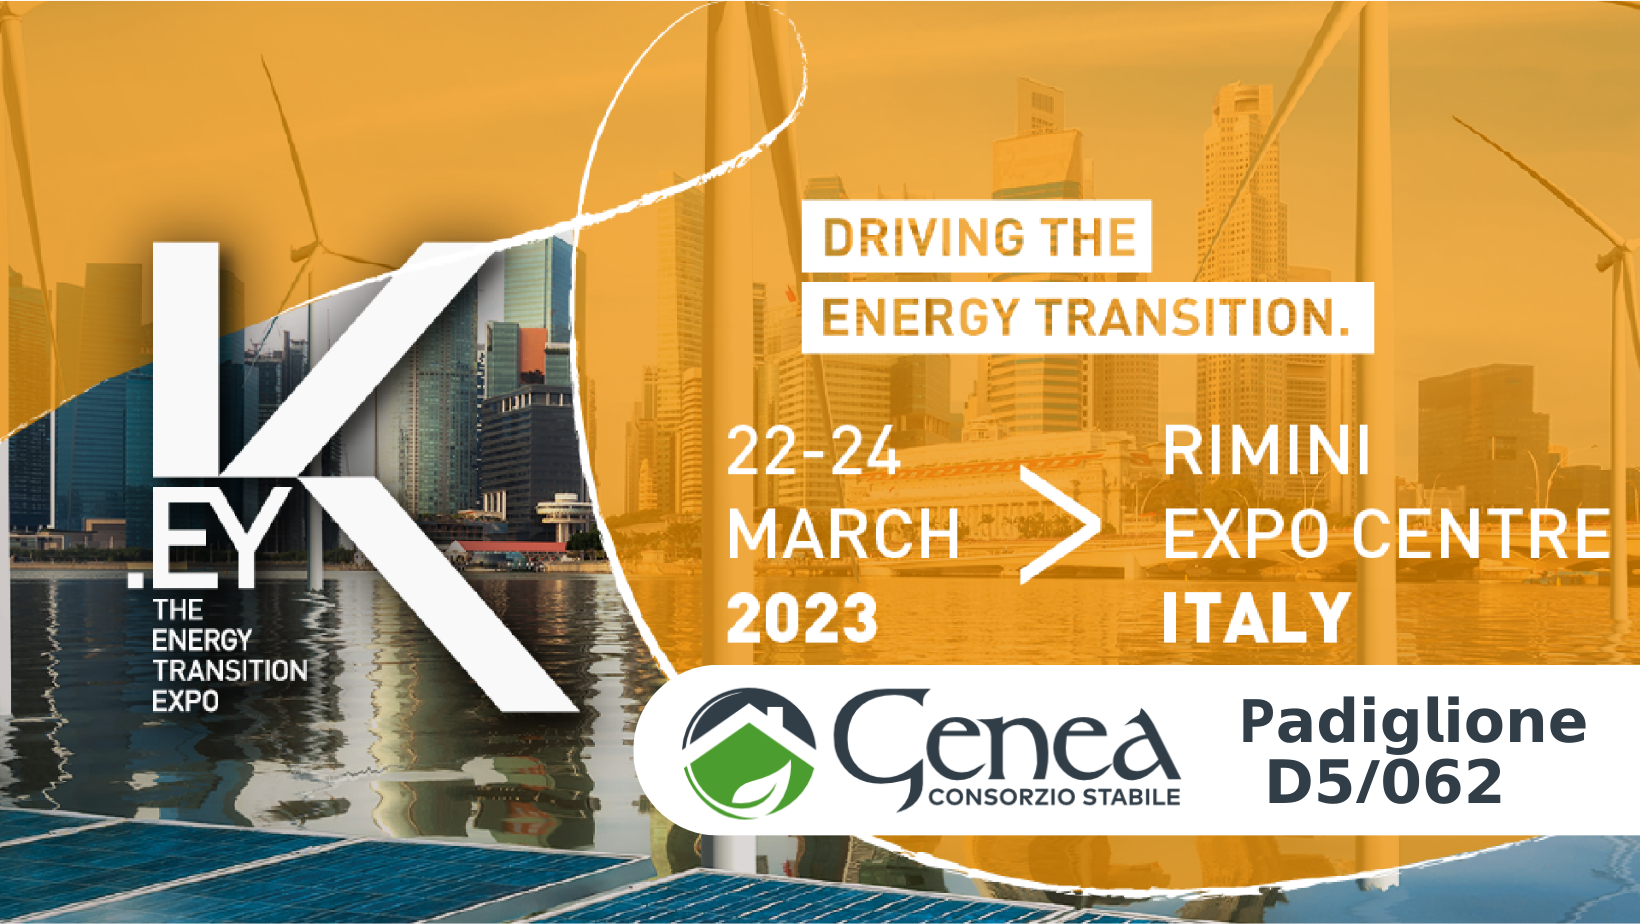 Genea ti aspetta a Rimini dal 22 al 24 marzo 2023 per la fiera K.E.Y Energy